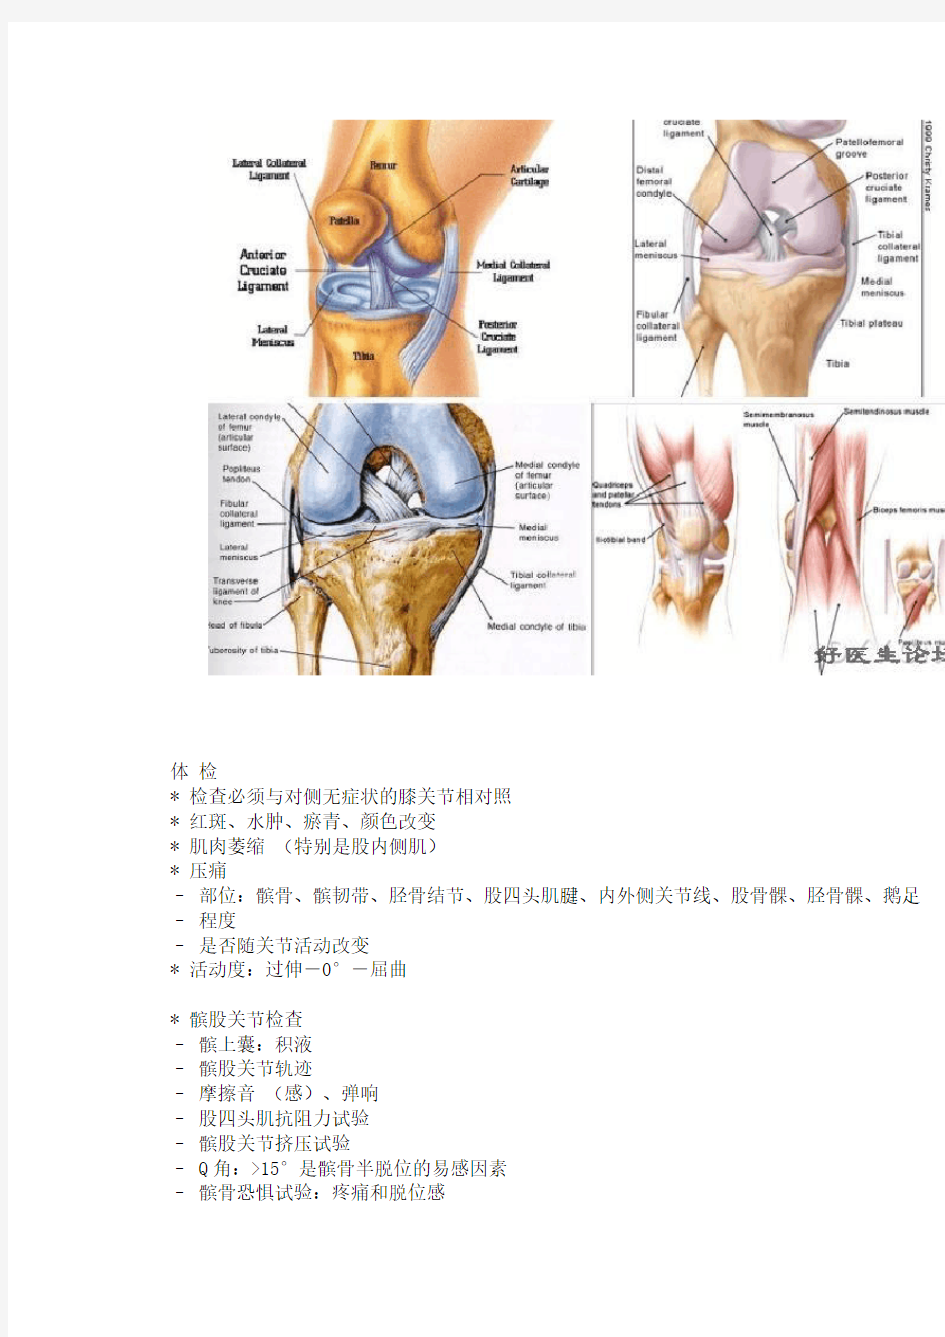 膝关节疼痛的诊断与鉴别诊断(附图) [图片]